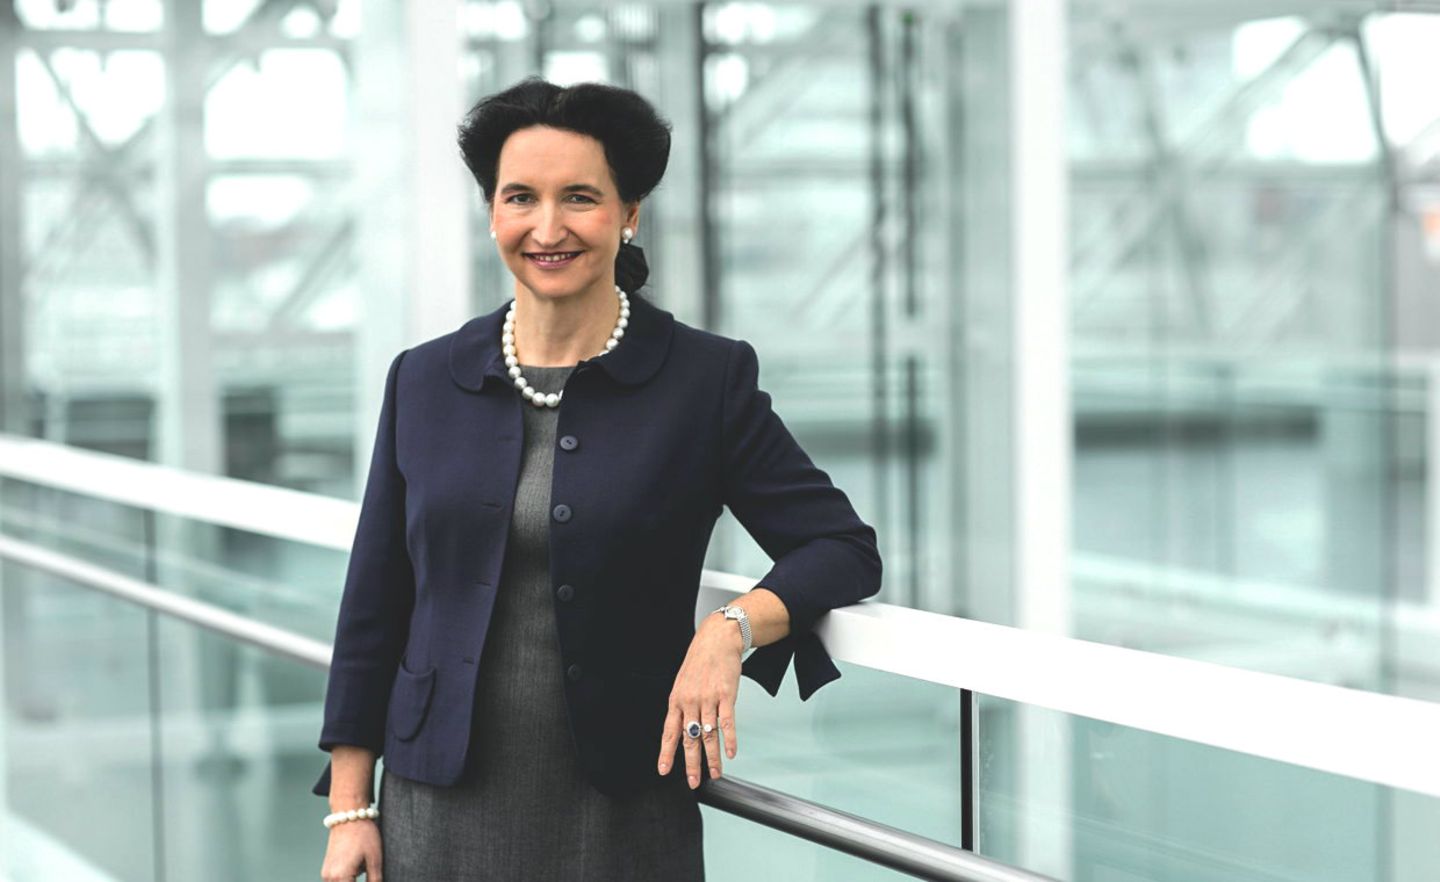 Carola Gräfin von Schmettow ist Chefin von HSBC Trinkaus & Burkhardt